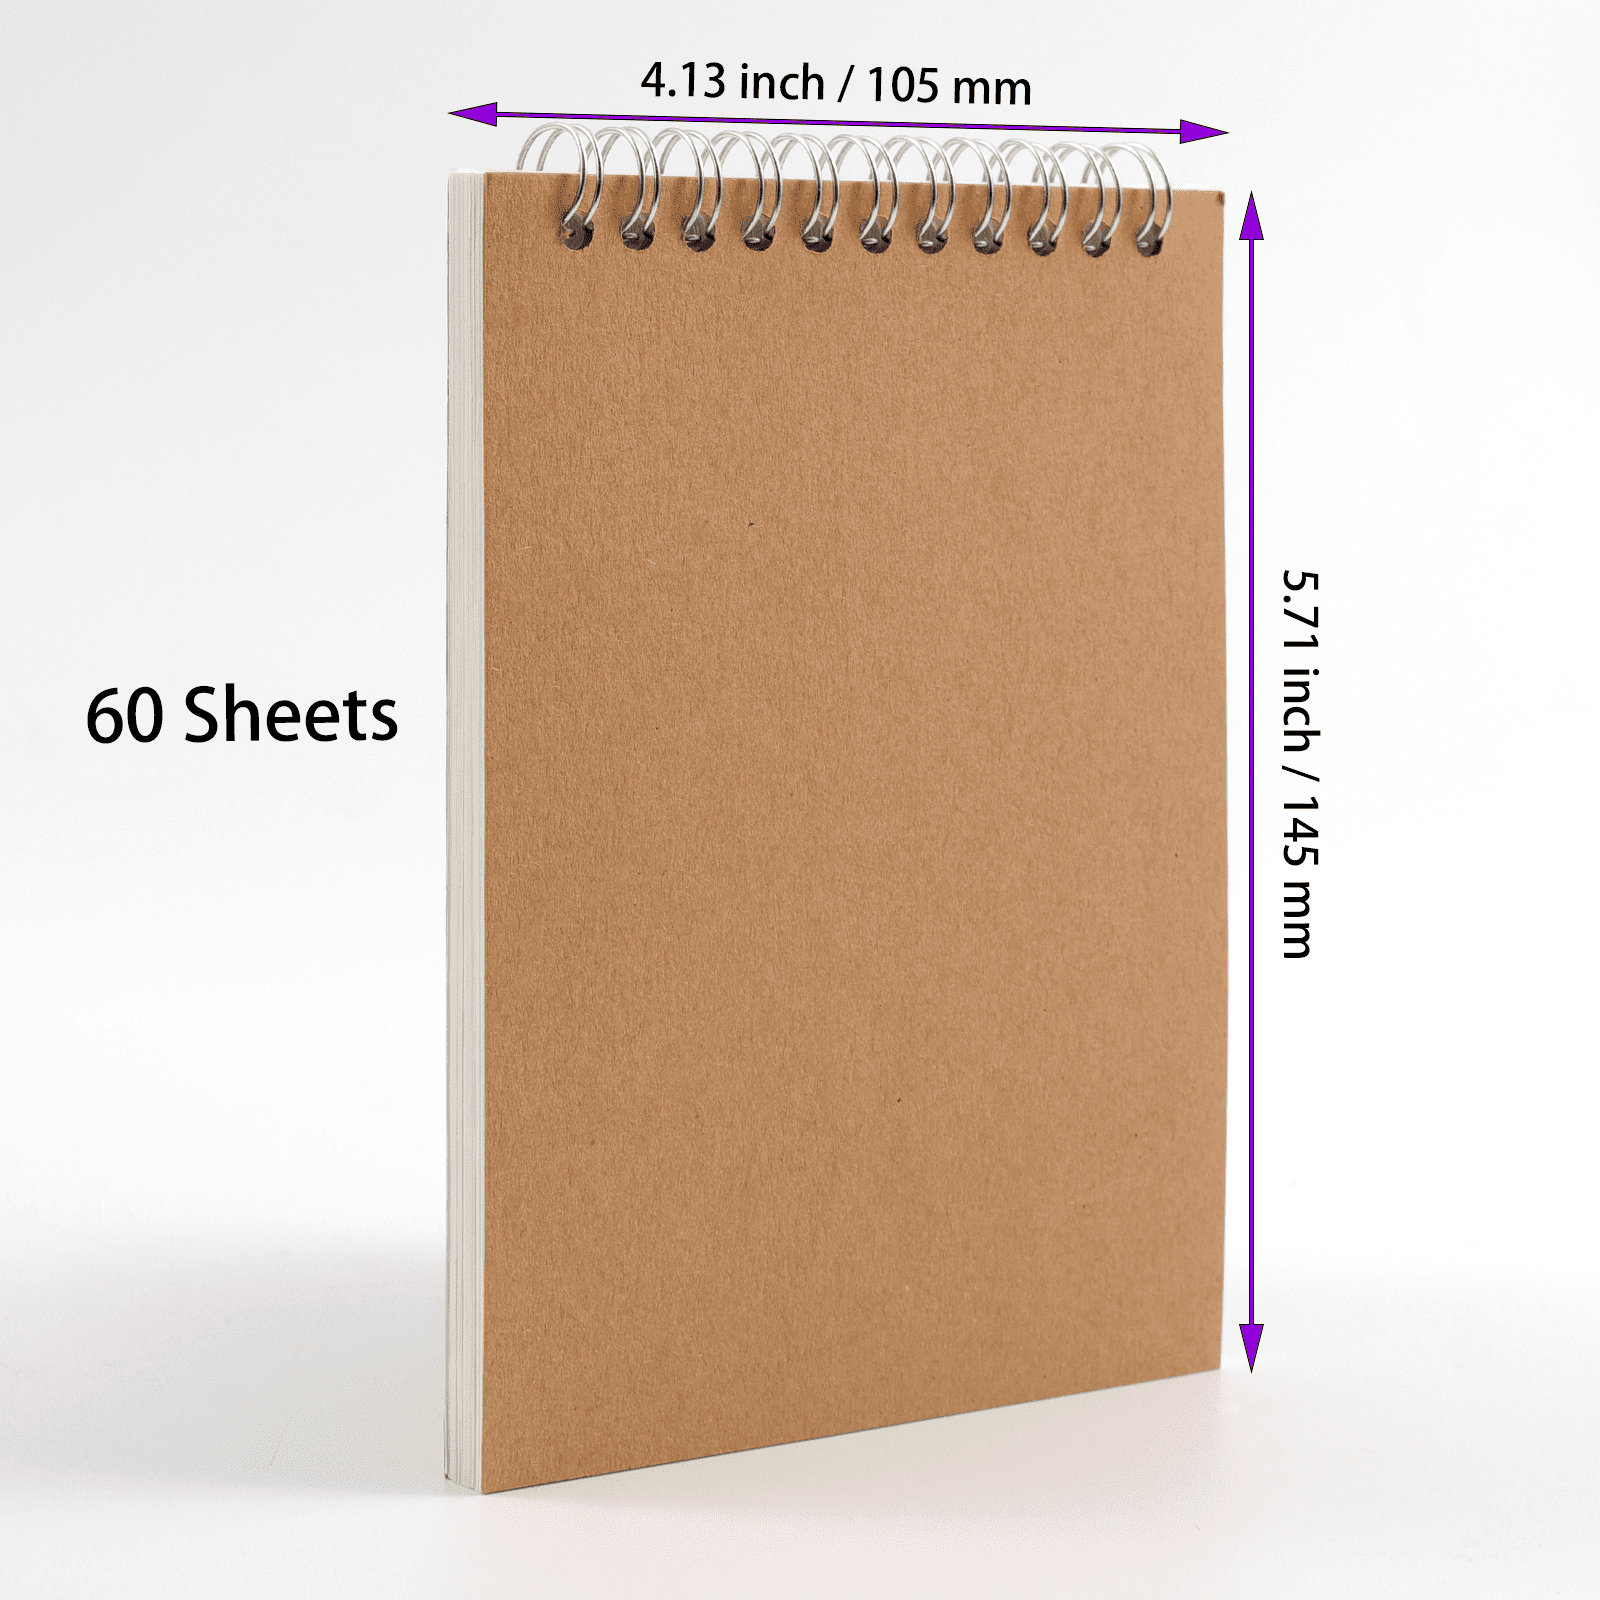 Sketch Bundle - 22-piece Sketch Set plus 60-page Sketch Pad